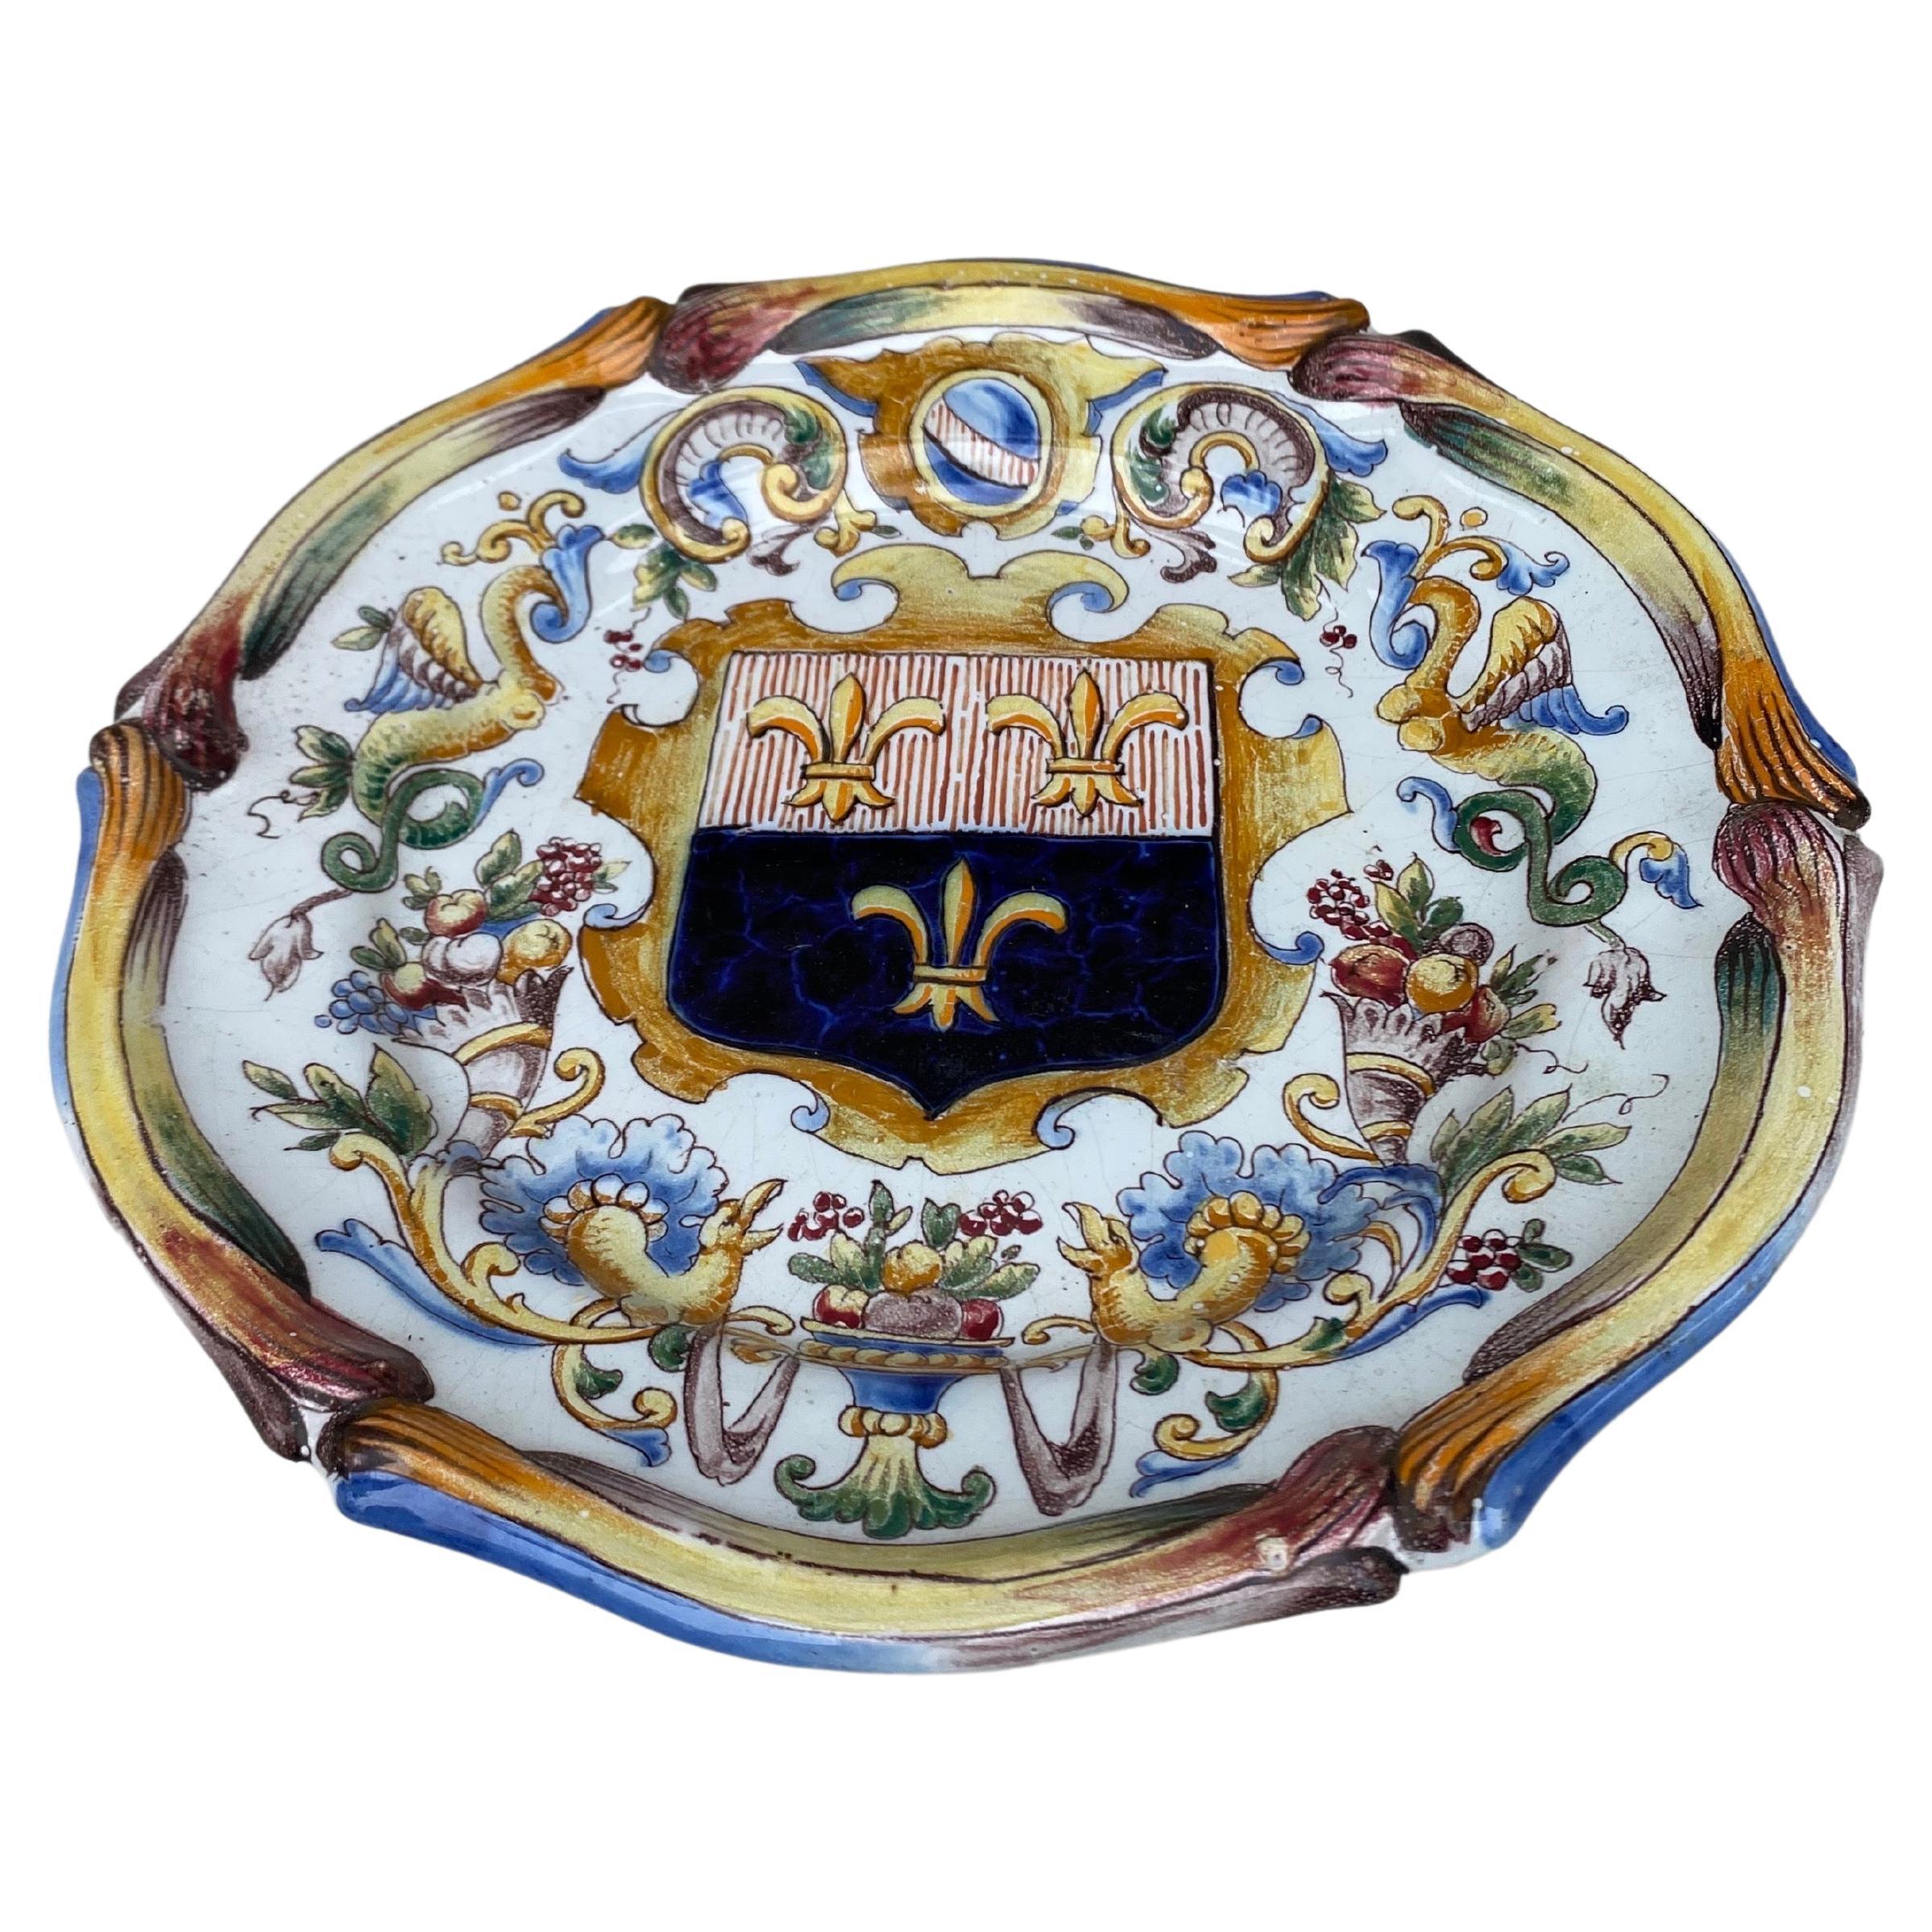 Französischer Fayence-Teller, signiert Saint Clement CIRCA 1900.
Dekoriert mit Füllhorn und Wappen mit Fleur de lis in der Mitte.